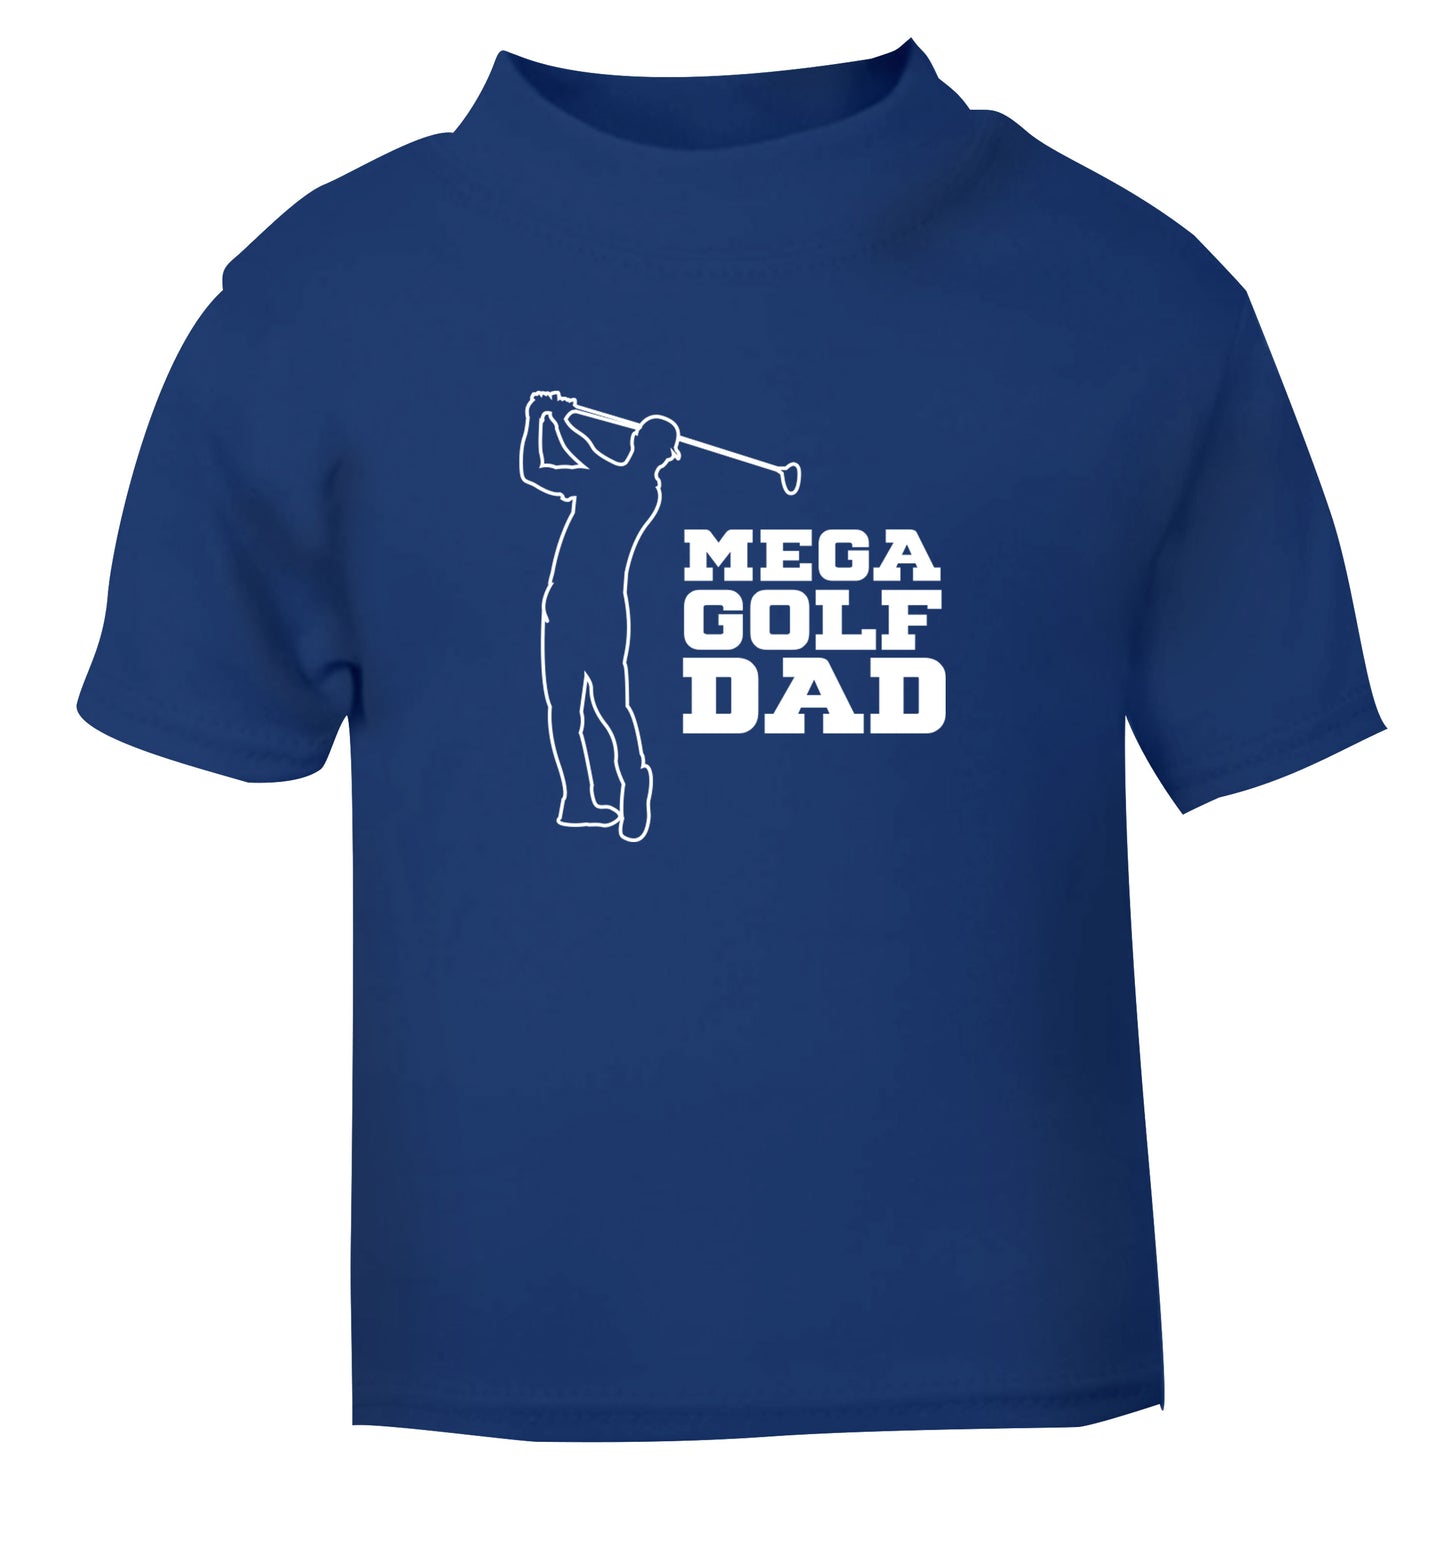 Mega golfing dad blue Baby Toddler Tshirt 2 Years